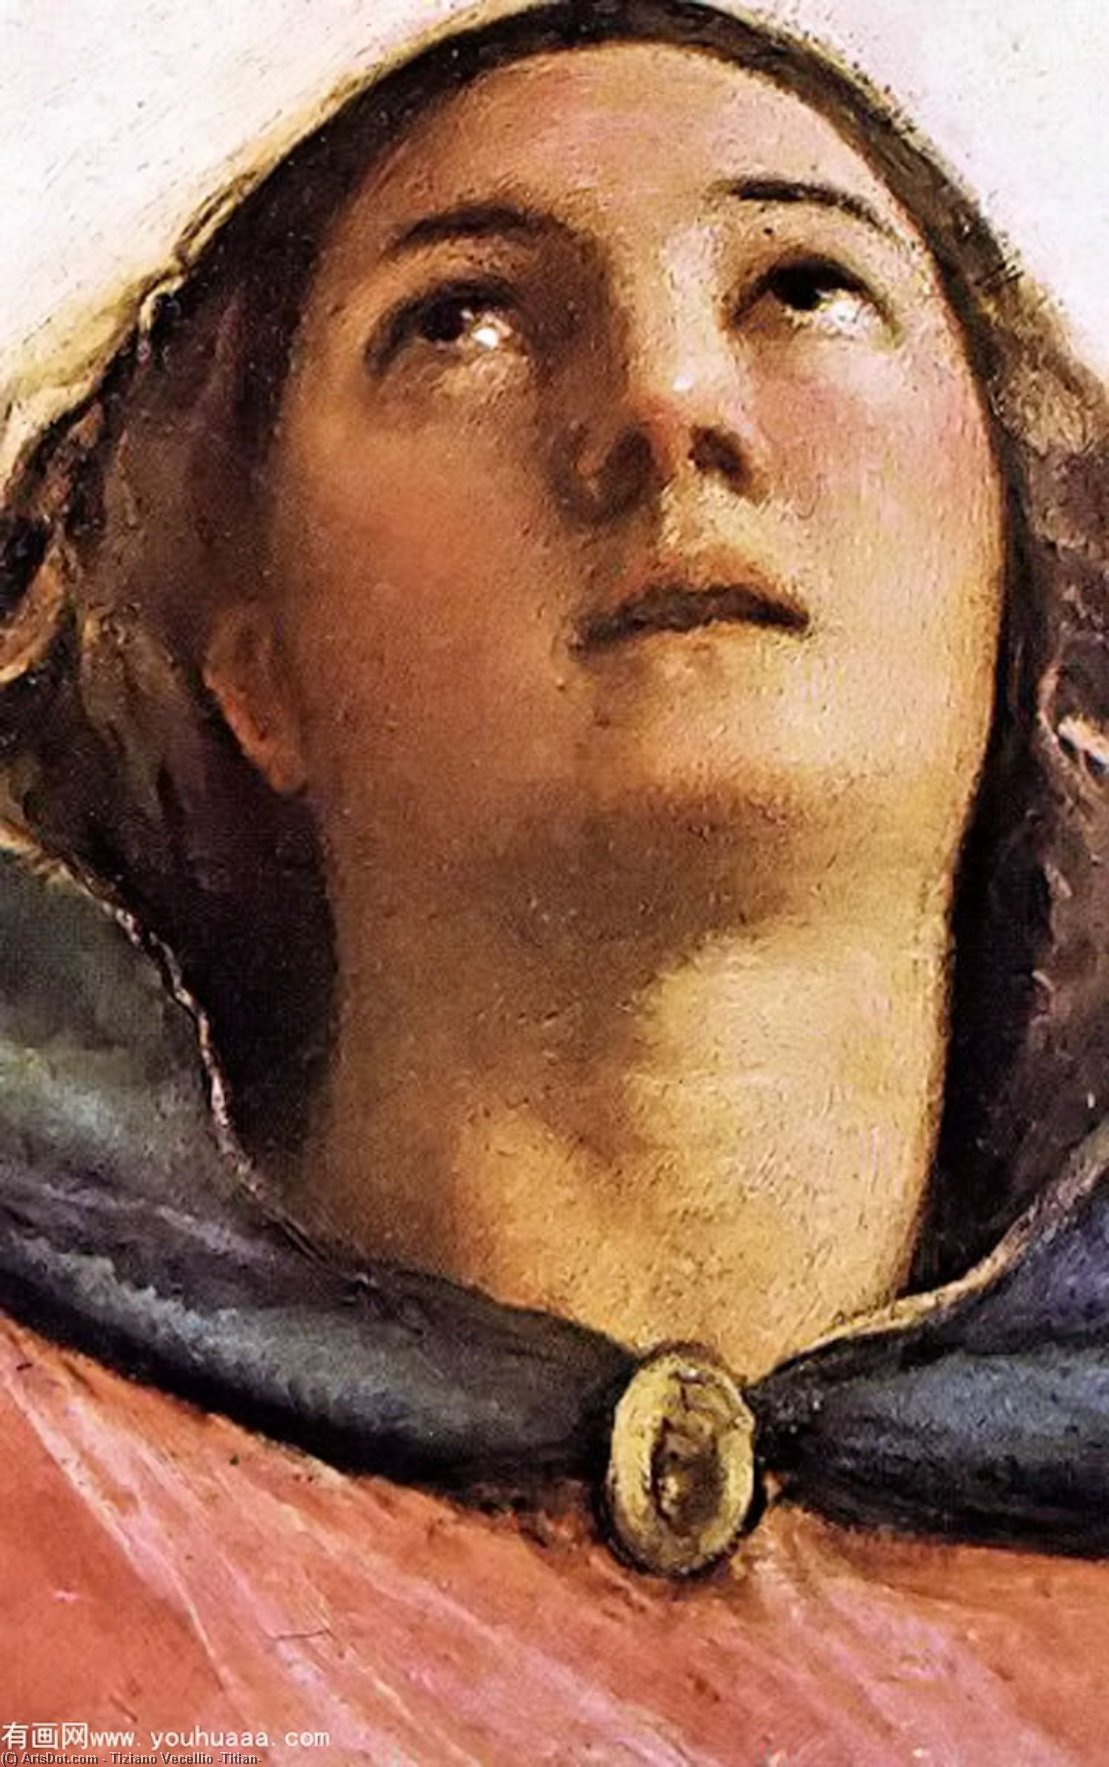 Wikoo.org - موسوعة الفنون الجميلة - اللوحة، العمل الفني Tiziano Vecellio (Titian) - Assumption of the Virgin (detail)